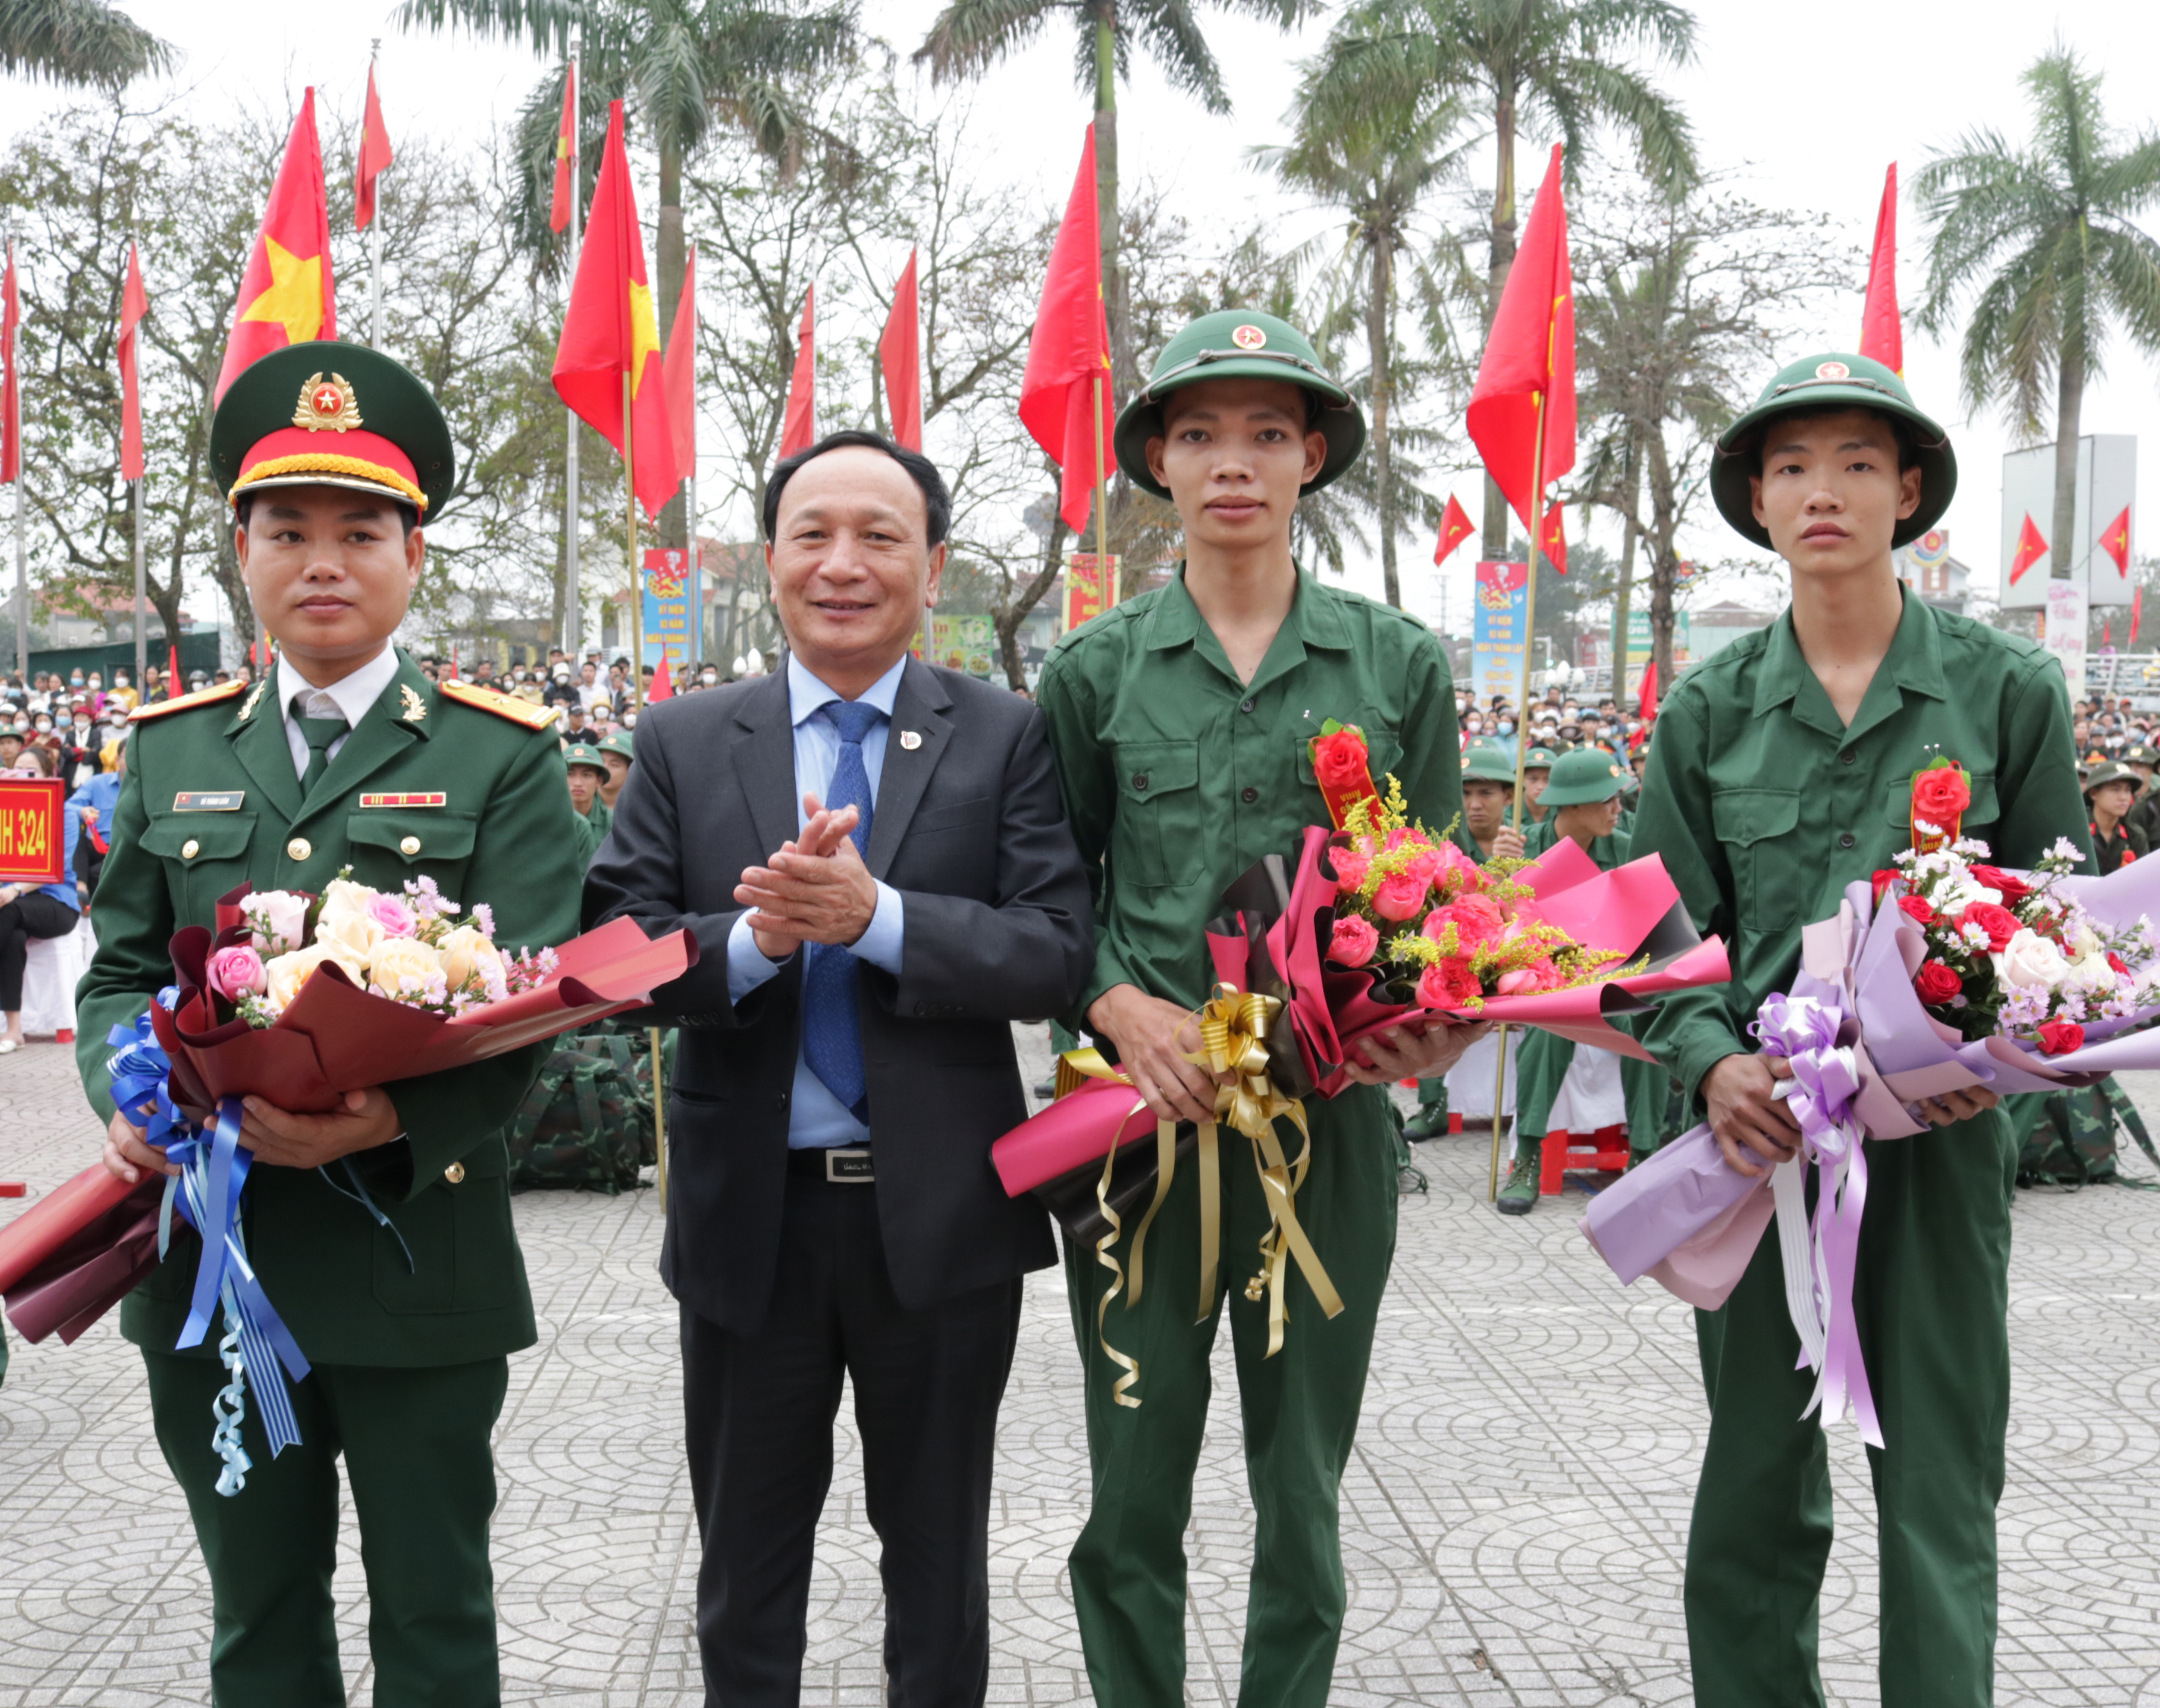 Đồng chí Trần Hải Châu, Phó Bí thư Thường trực Tỉnh ủy, Chủ tịch HĐND tỉnh tặng hoa động viên các tân binh.